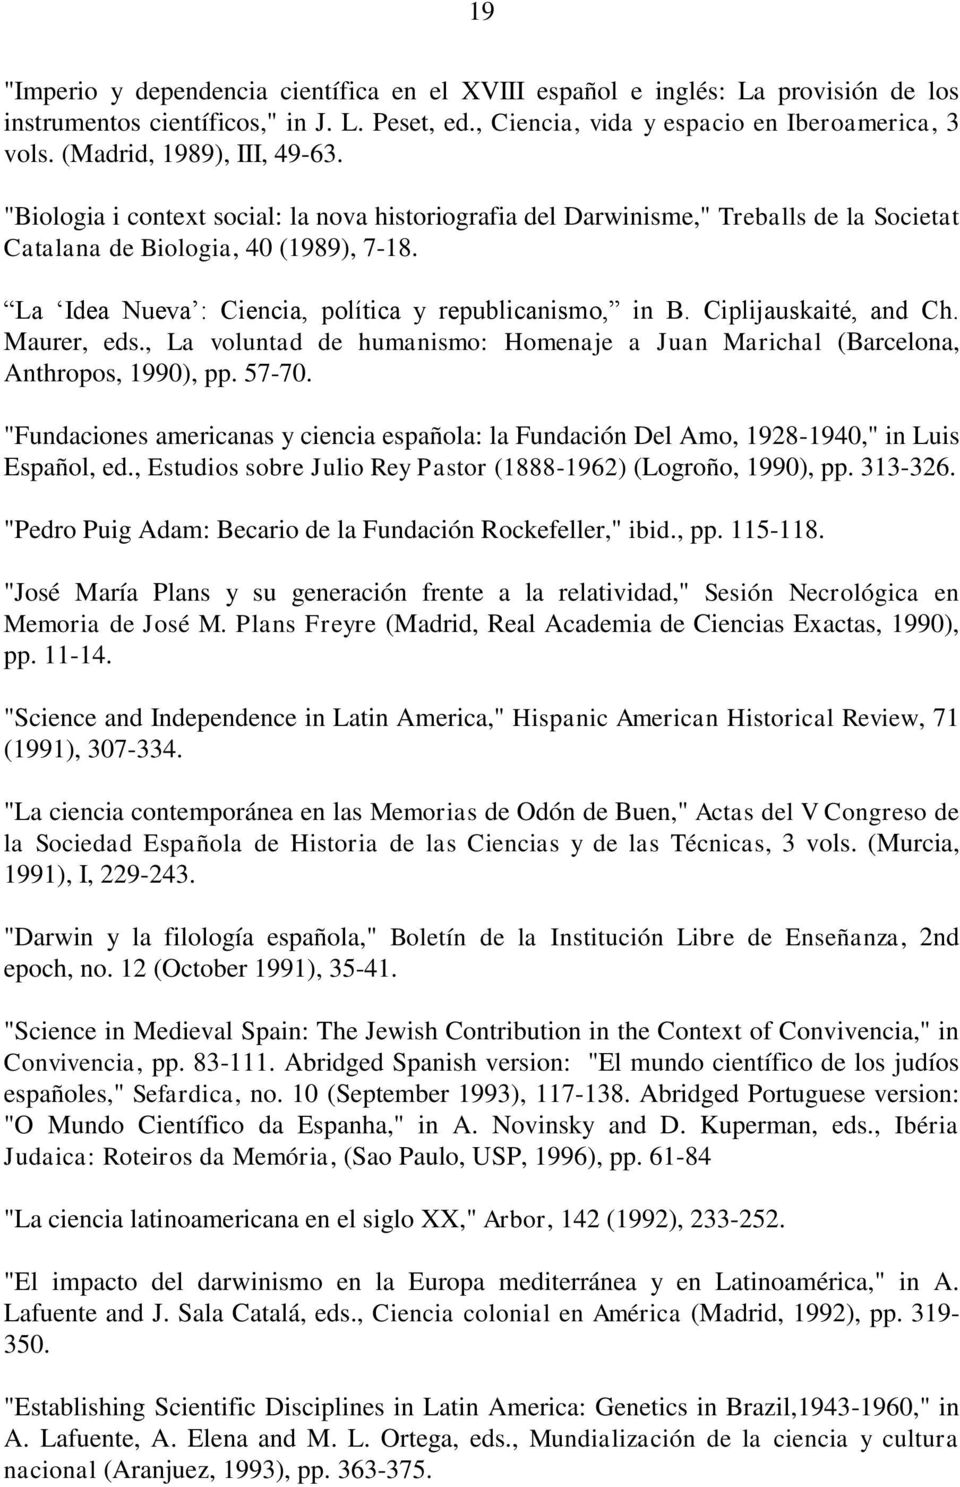 La Idea Nueva : Ciencia, política y republicanismo, in B. Ciplijauskaité, and Ch. Maurer, eds., La voluntad de humanismo: Homenaje a Juan Marichal (Barcelona, Anthropos, 1990), pp. 57-70.